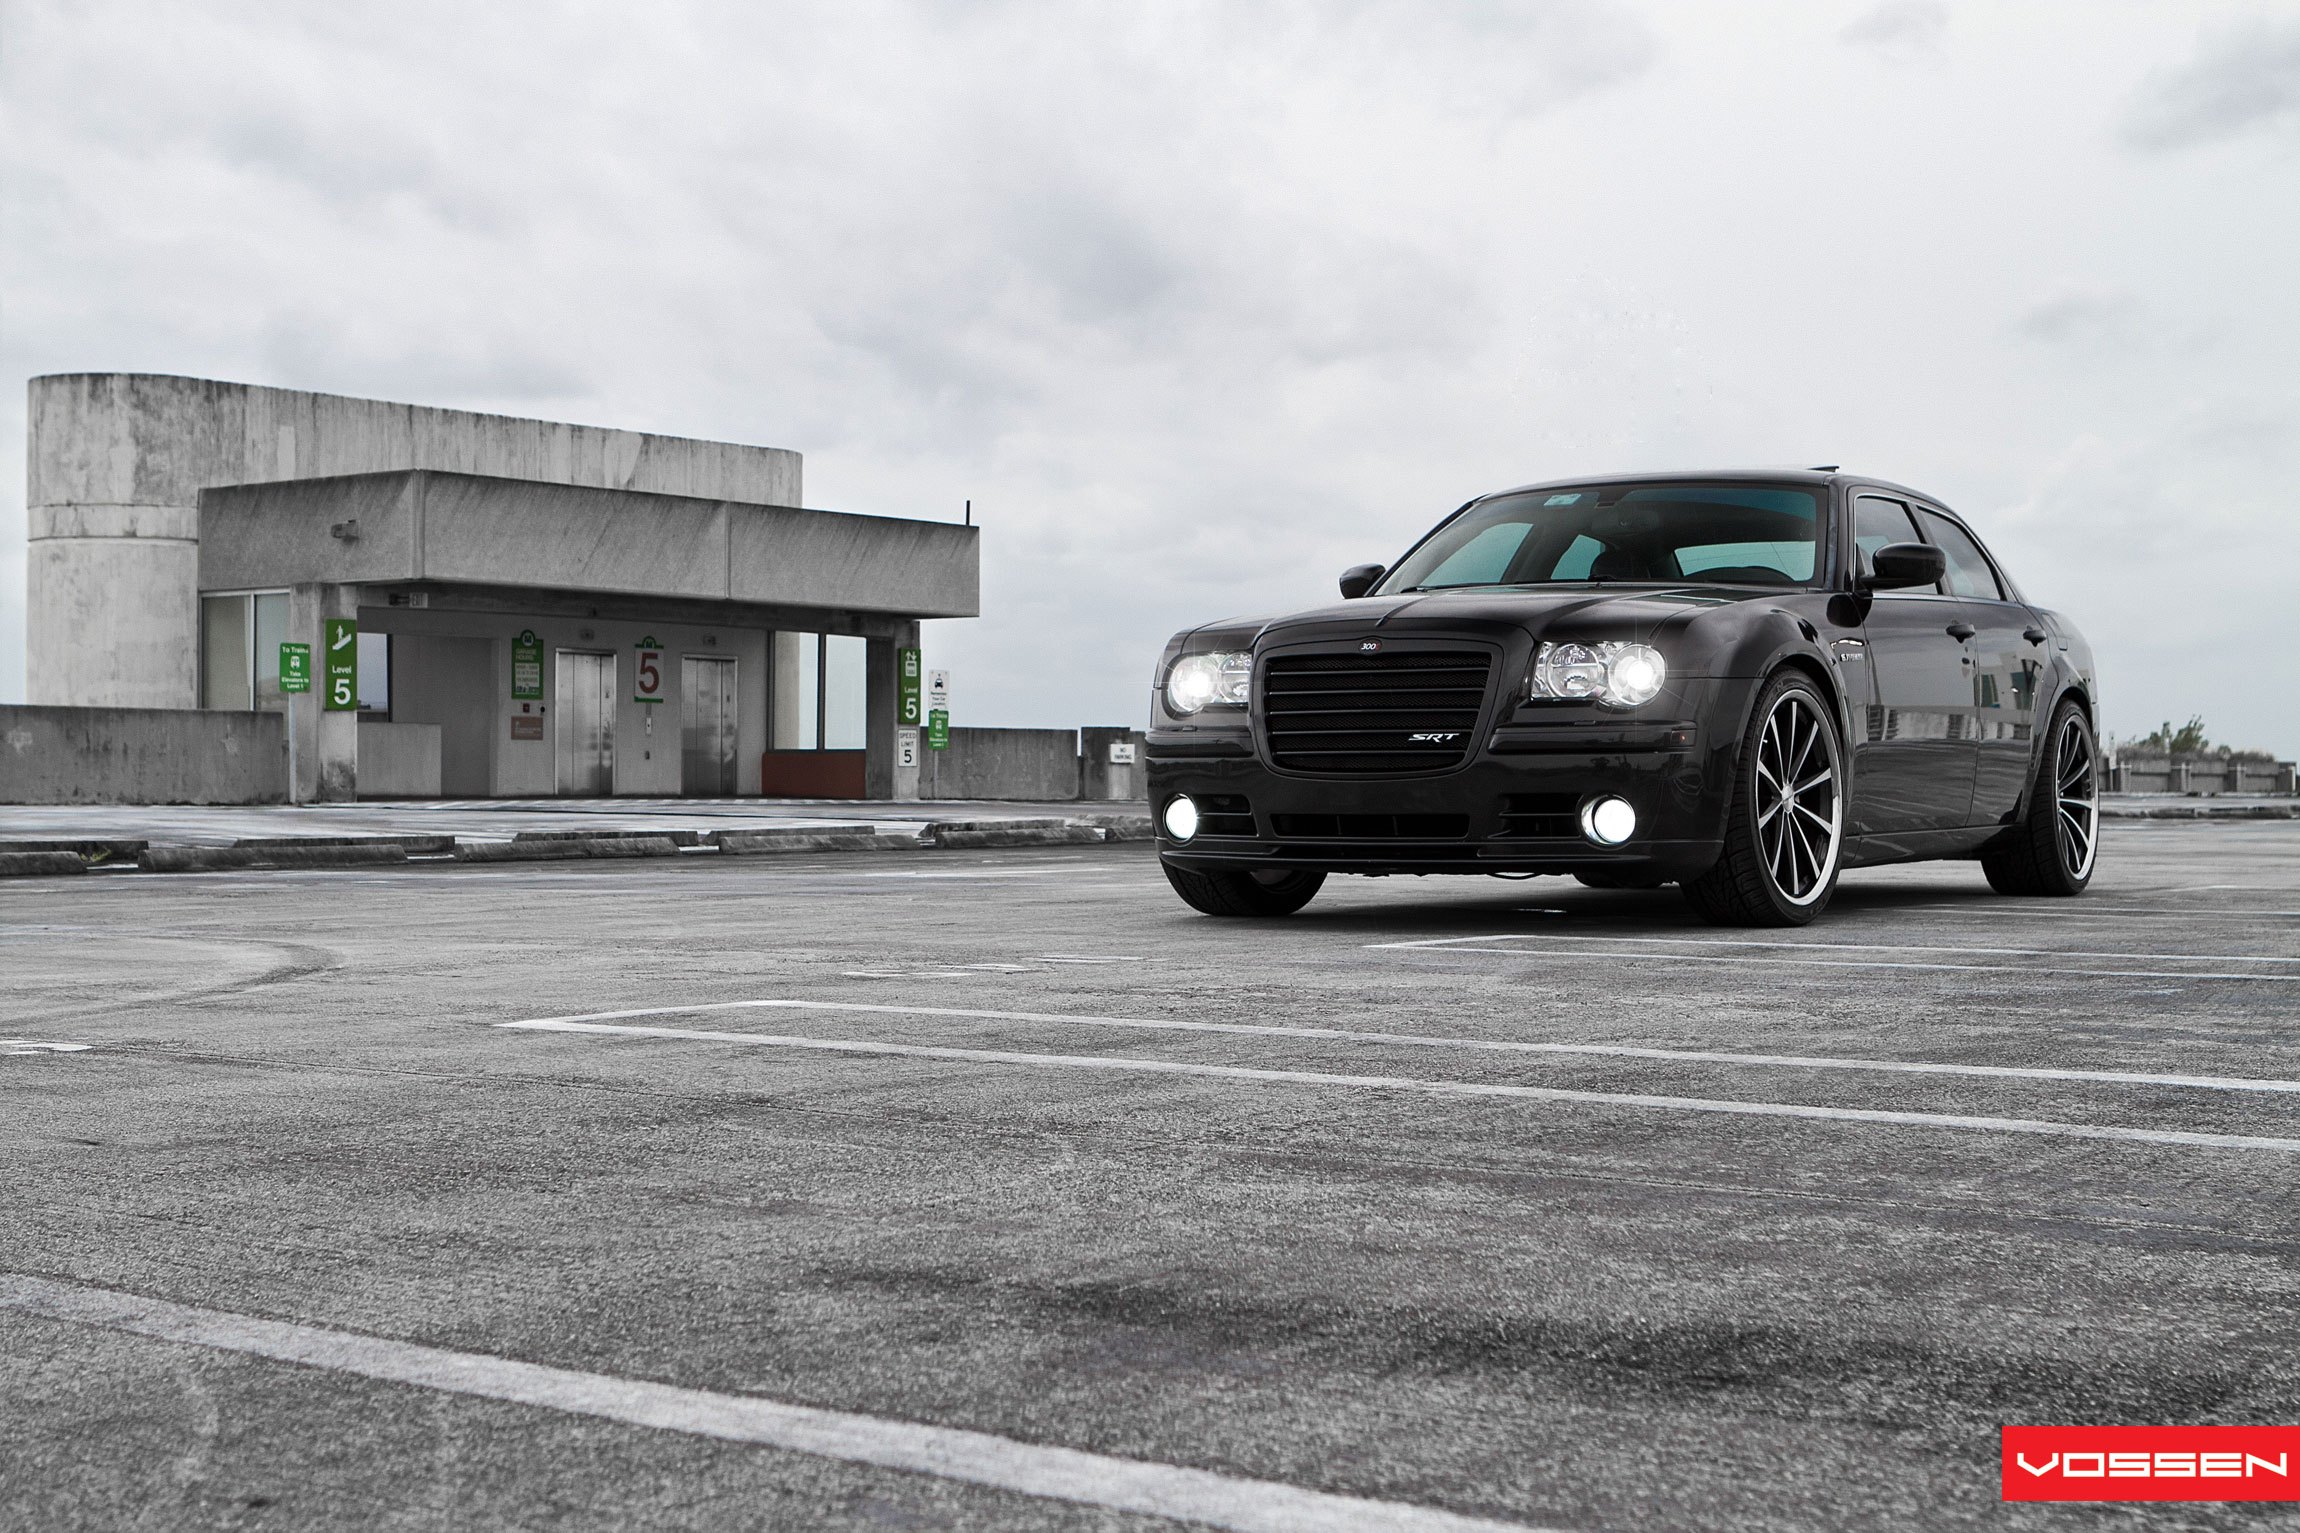 Custom Black Billet Grille on Chrysler 300 SRT - Photo by Vossen